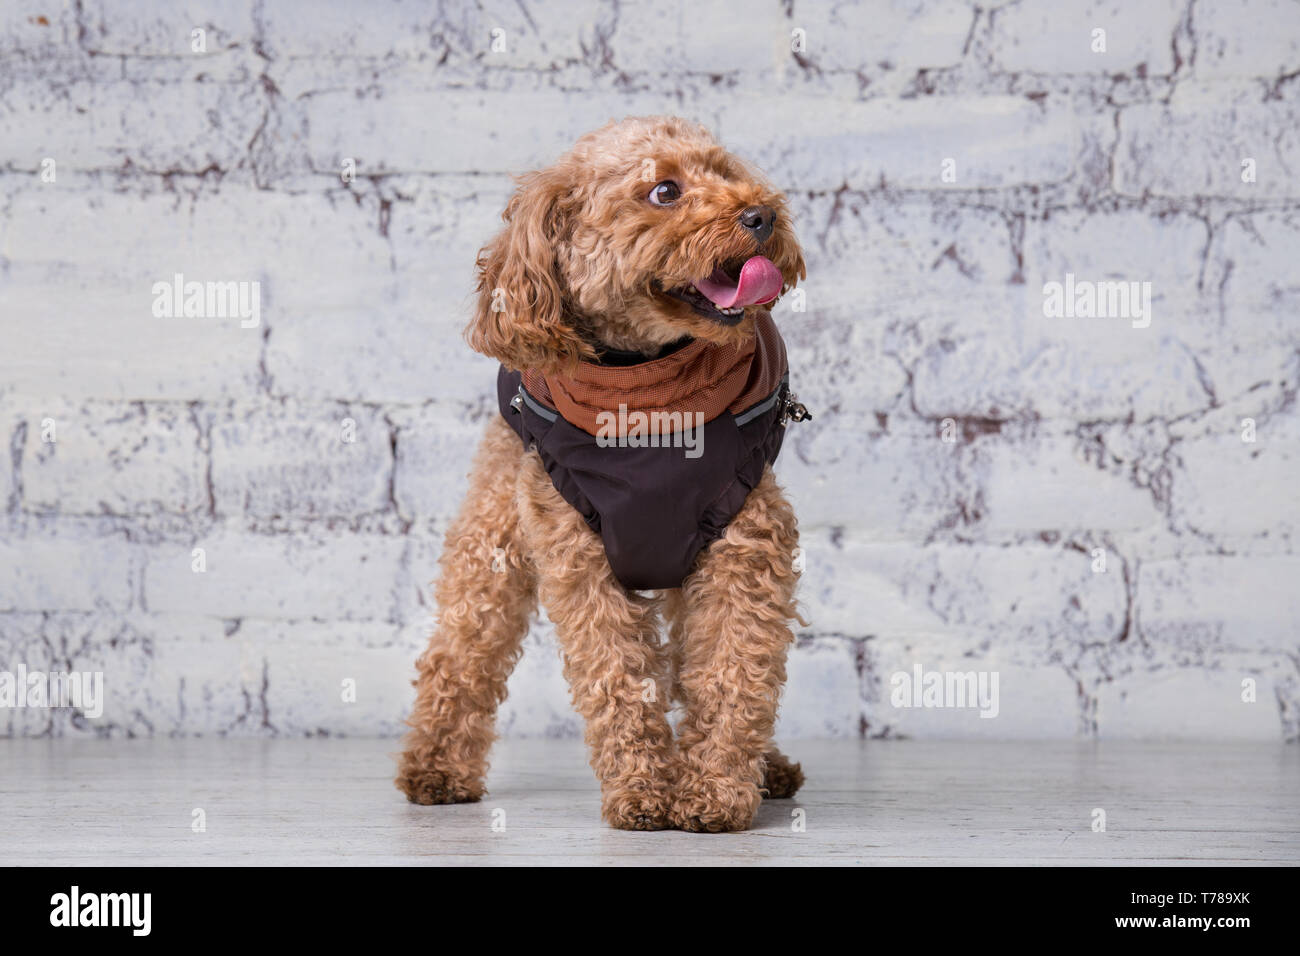 Pequeño perro gracioso de color marrón con el pelo rizado de raza poodle de  juguete posando en ropa para perros. Tema accesorios y trajes de moda para  mascotas. S Fotografía de stock -